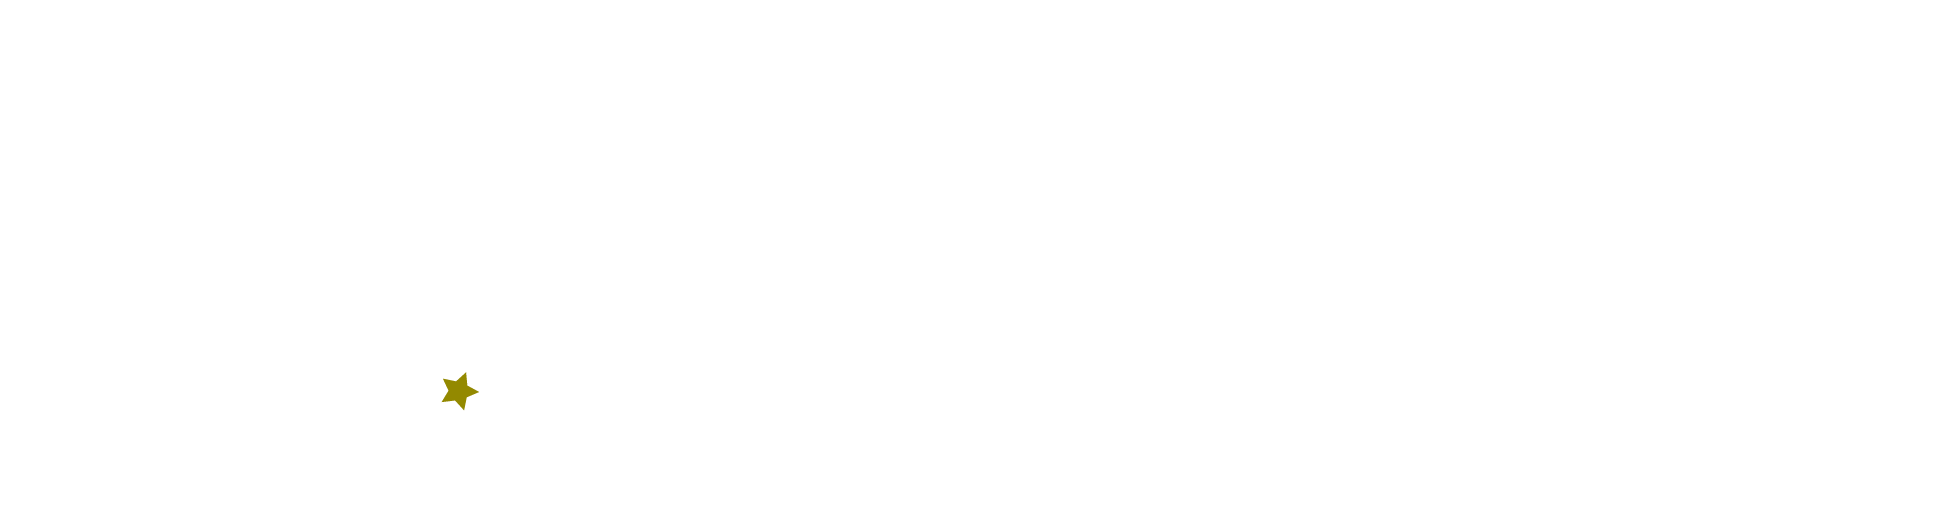 Espace culturel Ronny Coutteure